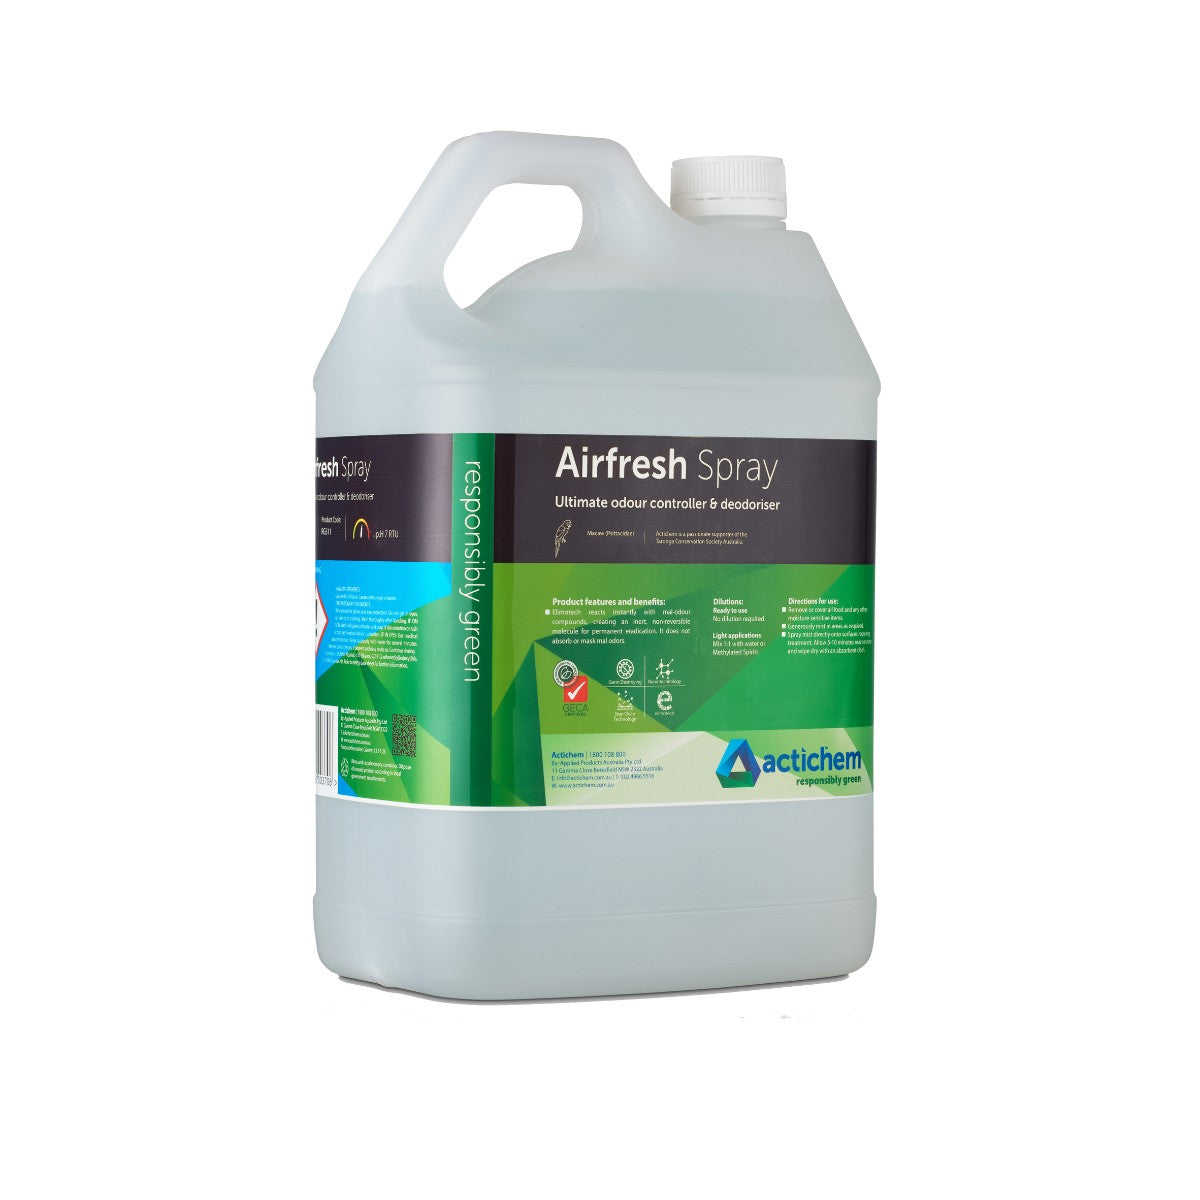 Actichem Airfresh Spray RG511